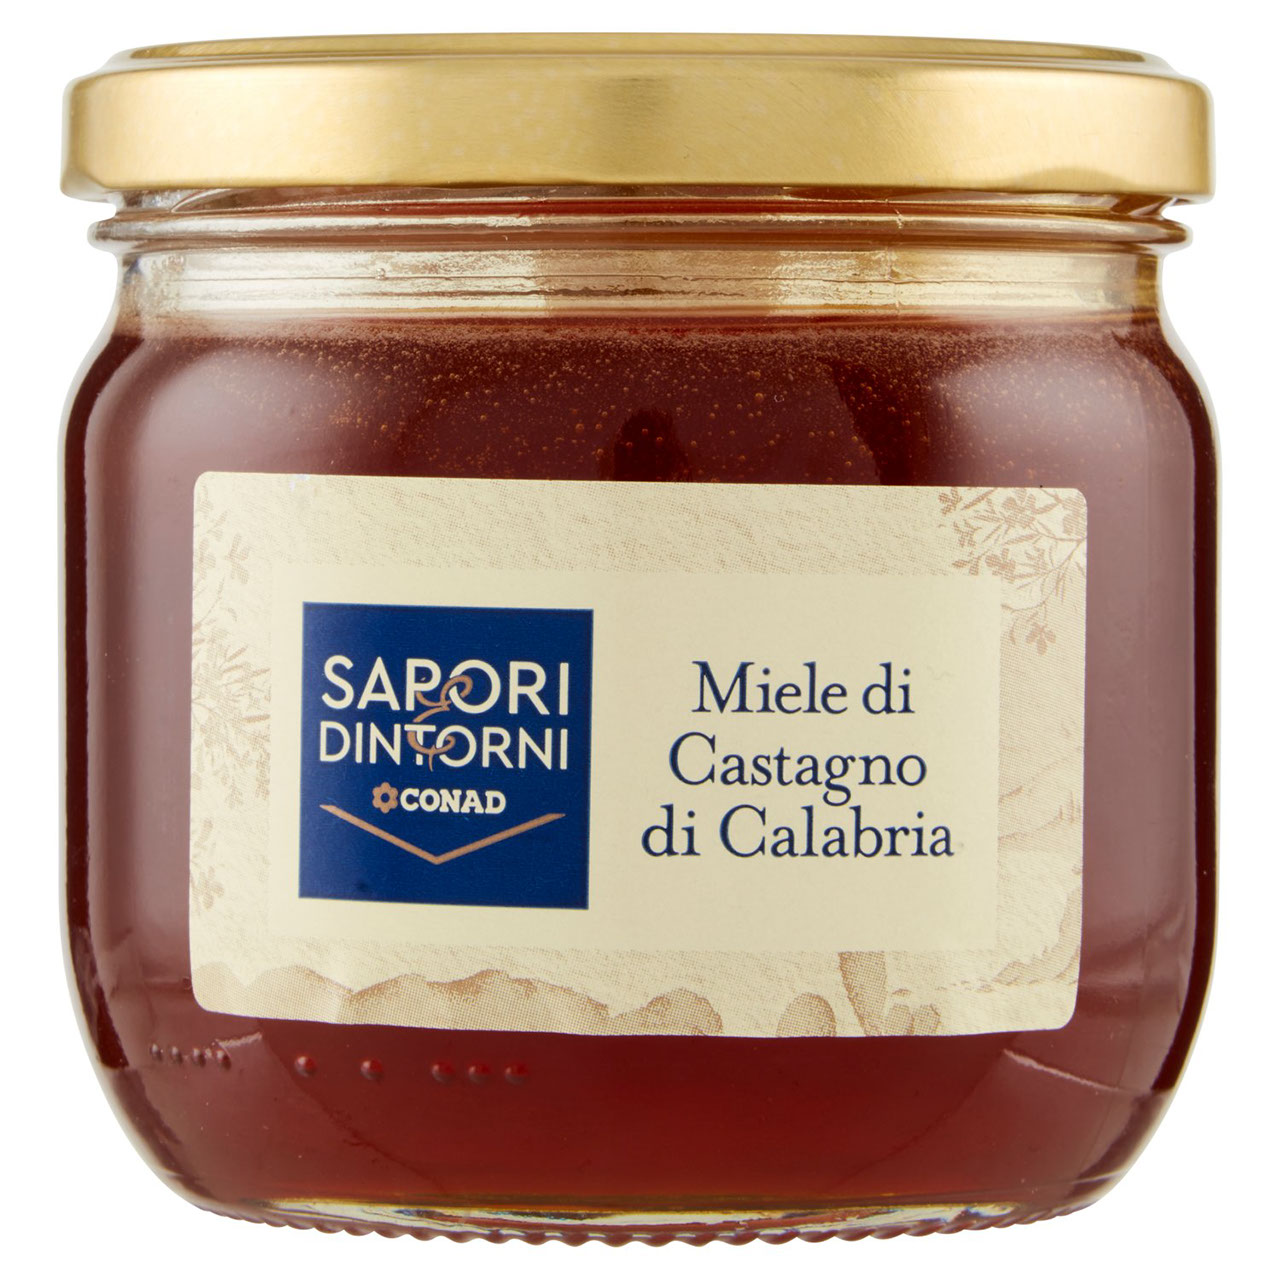 Miele di Castagno di Calabria Sapori e Dintorni